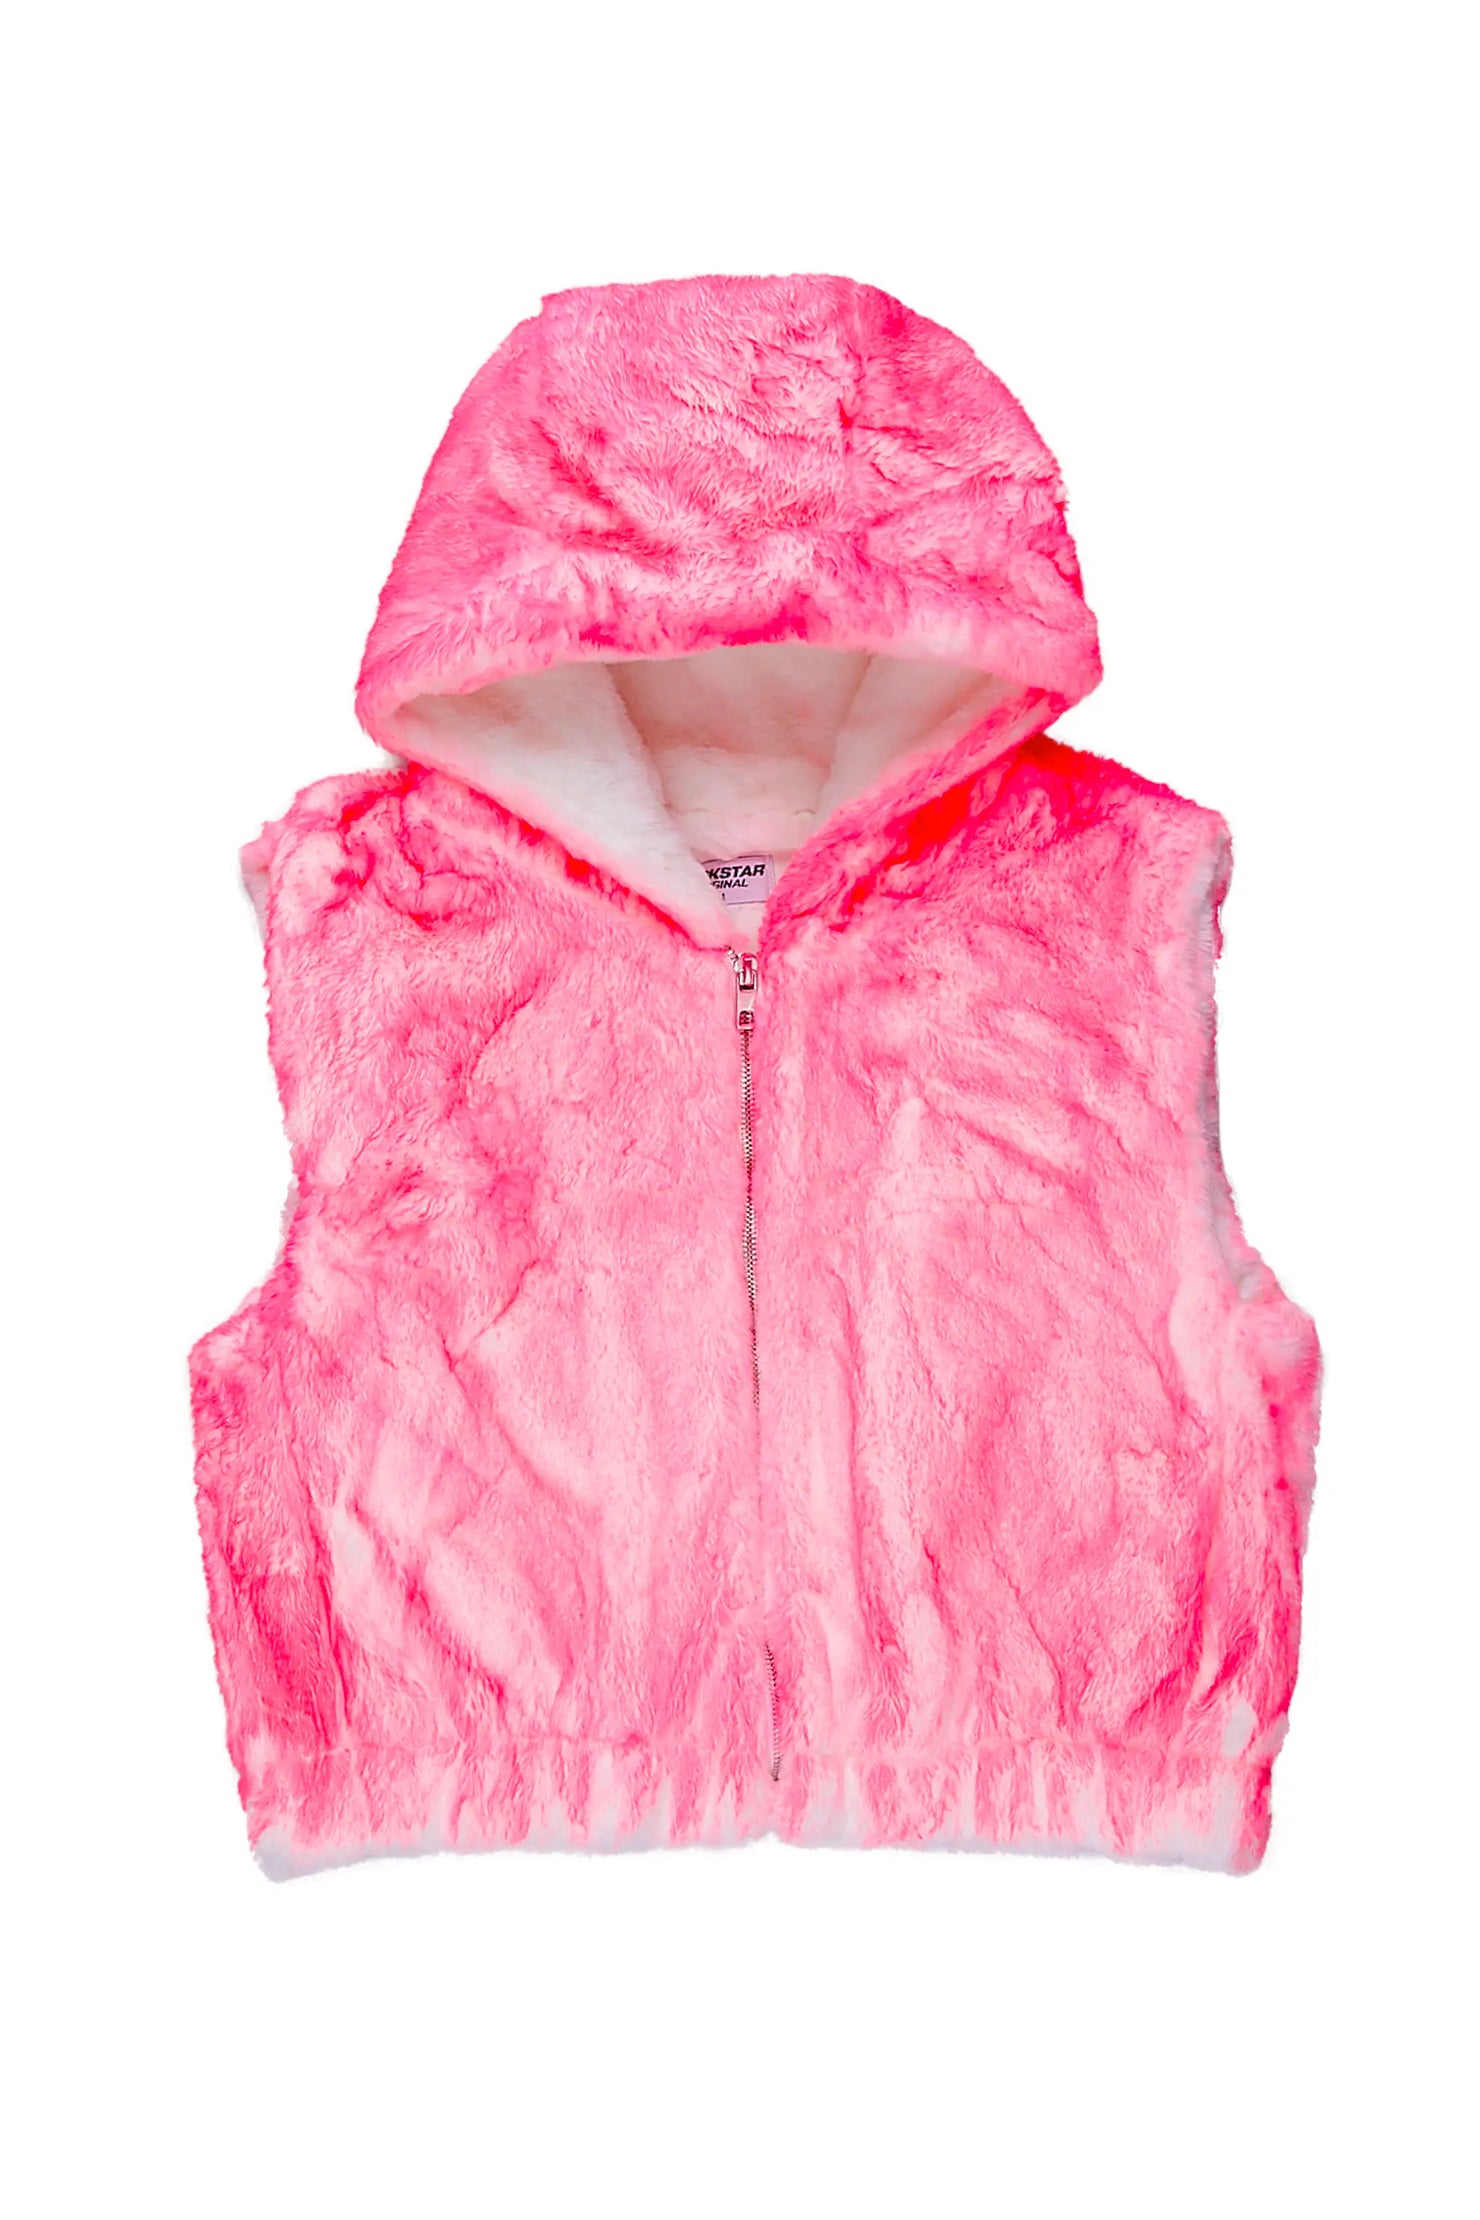 Christal Pink Fur Vest